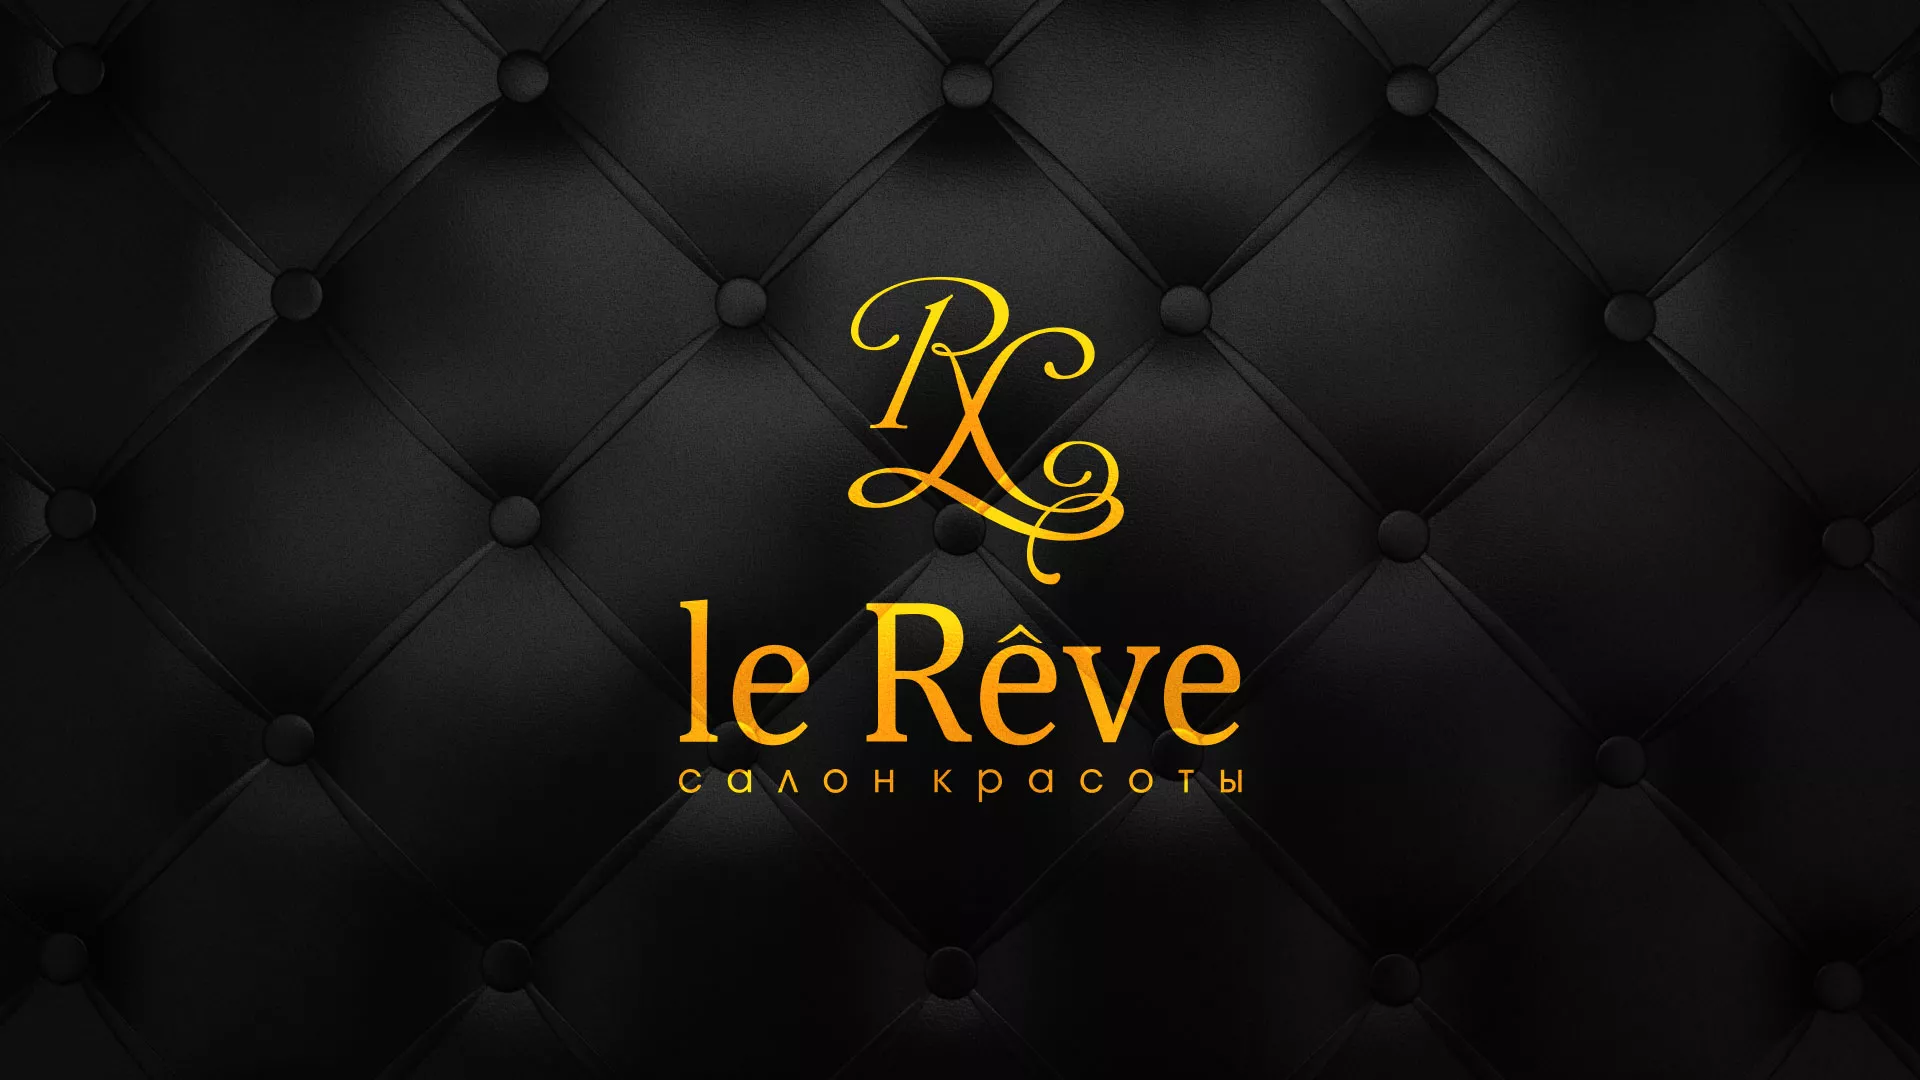 Разработка листовок для салона красоты «Le Reve» в Урюпинске